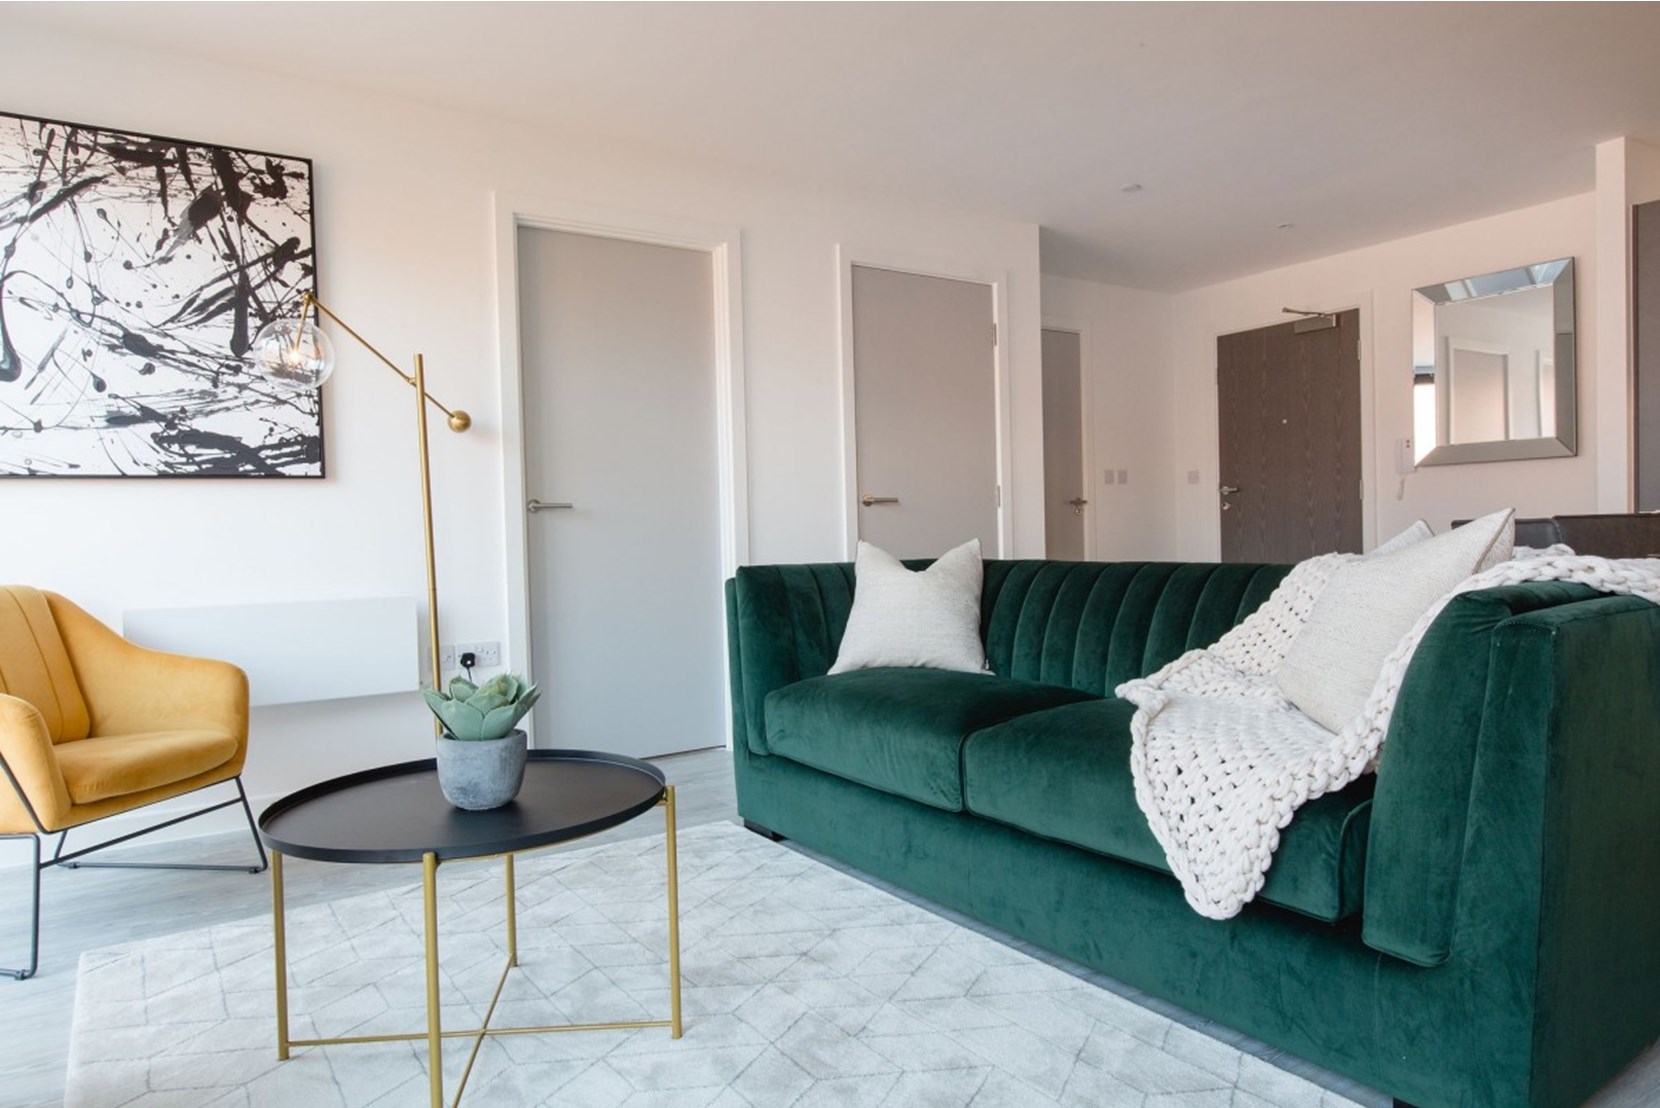 Apartment-Allsop-Vox-Manchester-interior-living-area